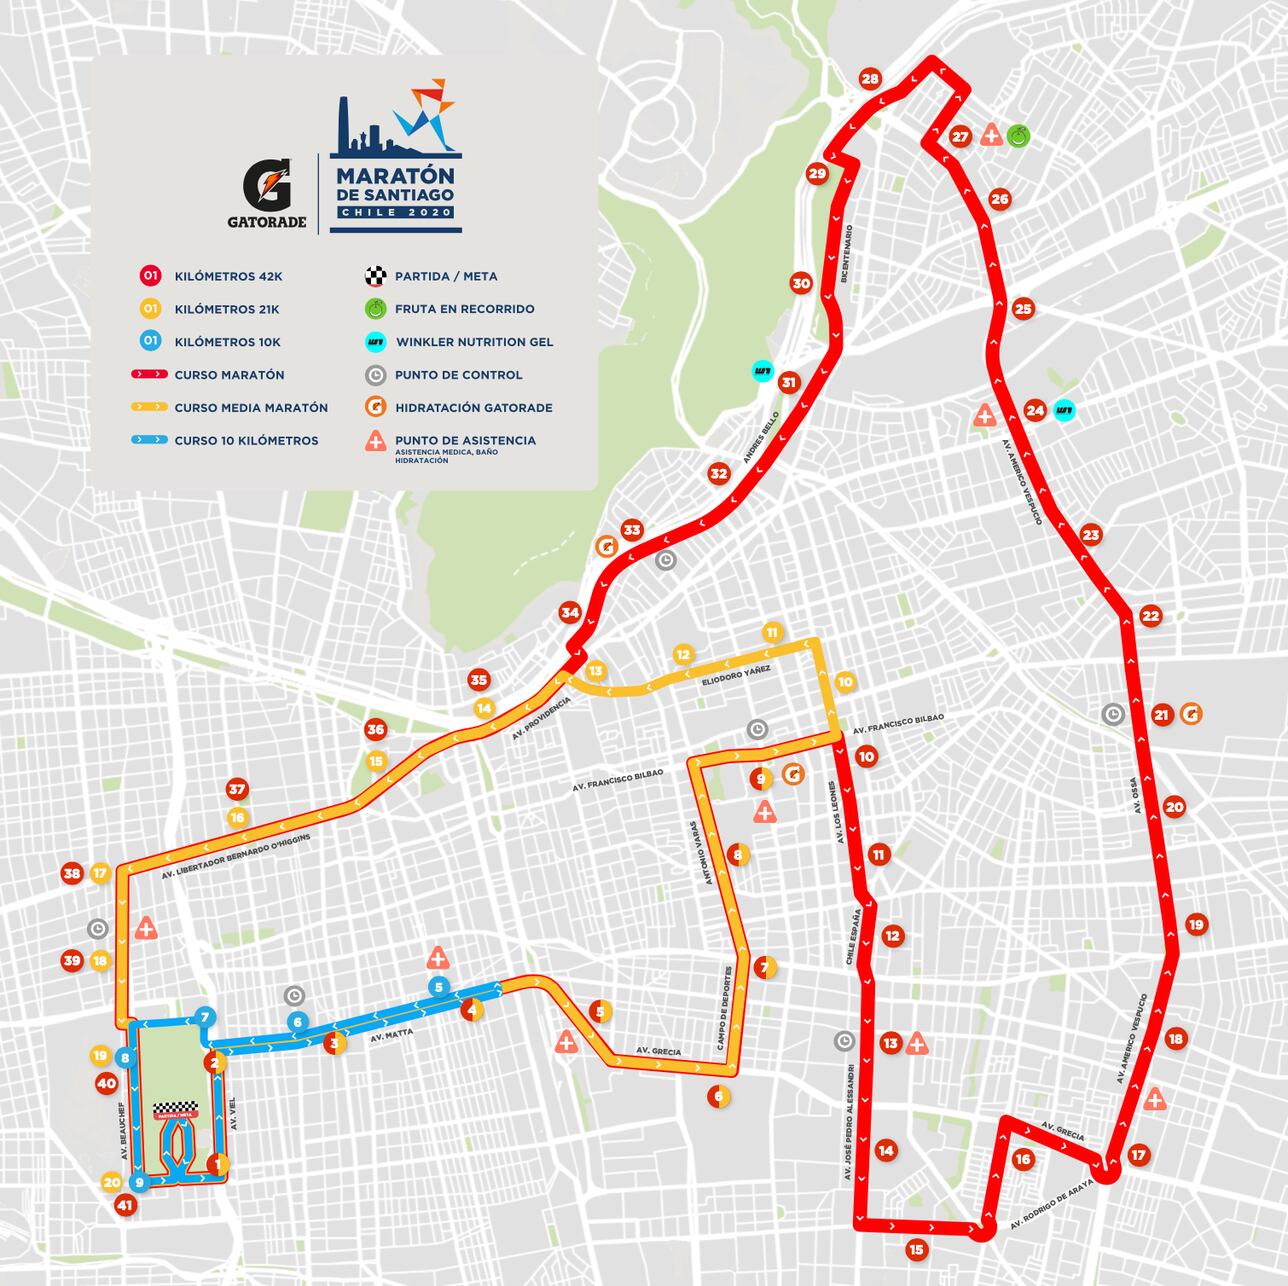 El Maratón de Santiago anuncia nueva ruta así serán los recorridos